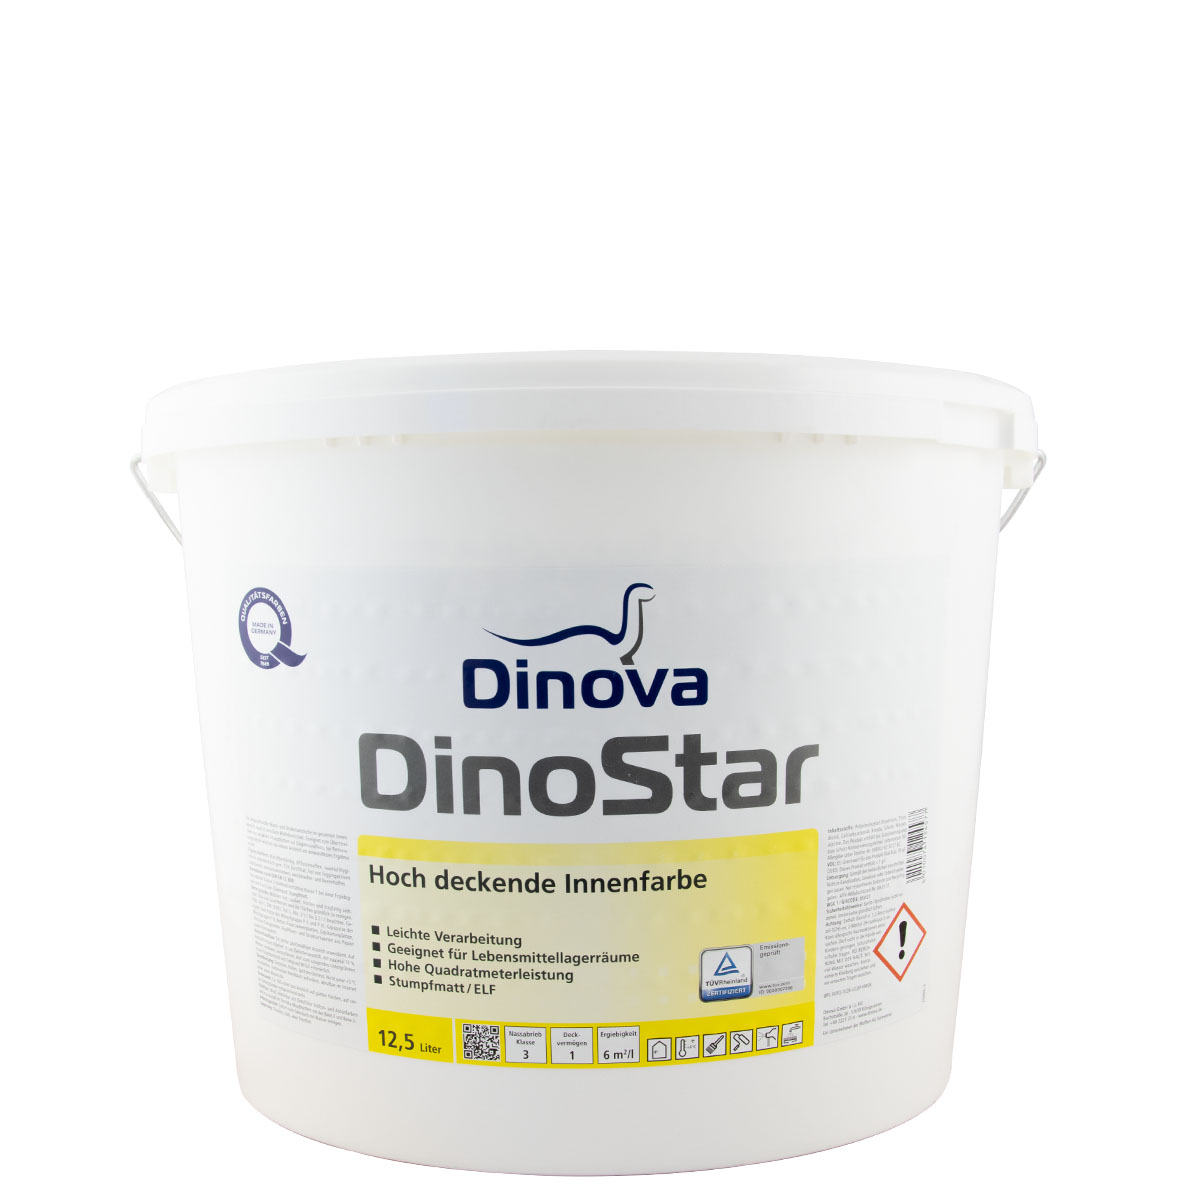 Dinova Dinostar 12,5L weiss, Hochdeckende Innenfarbe